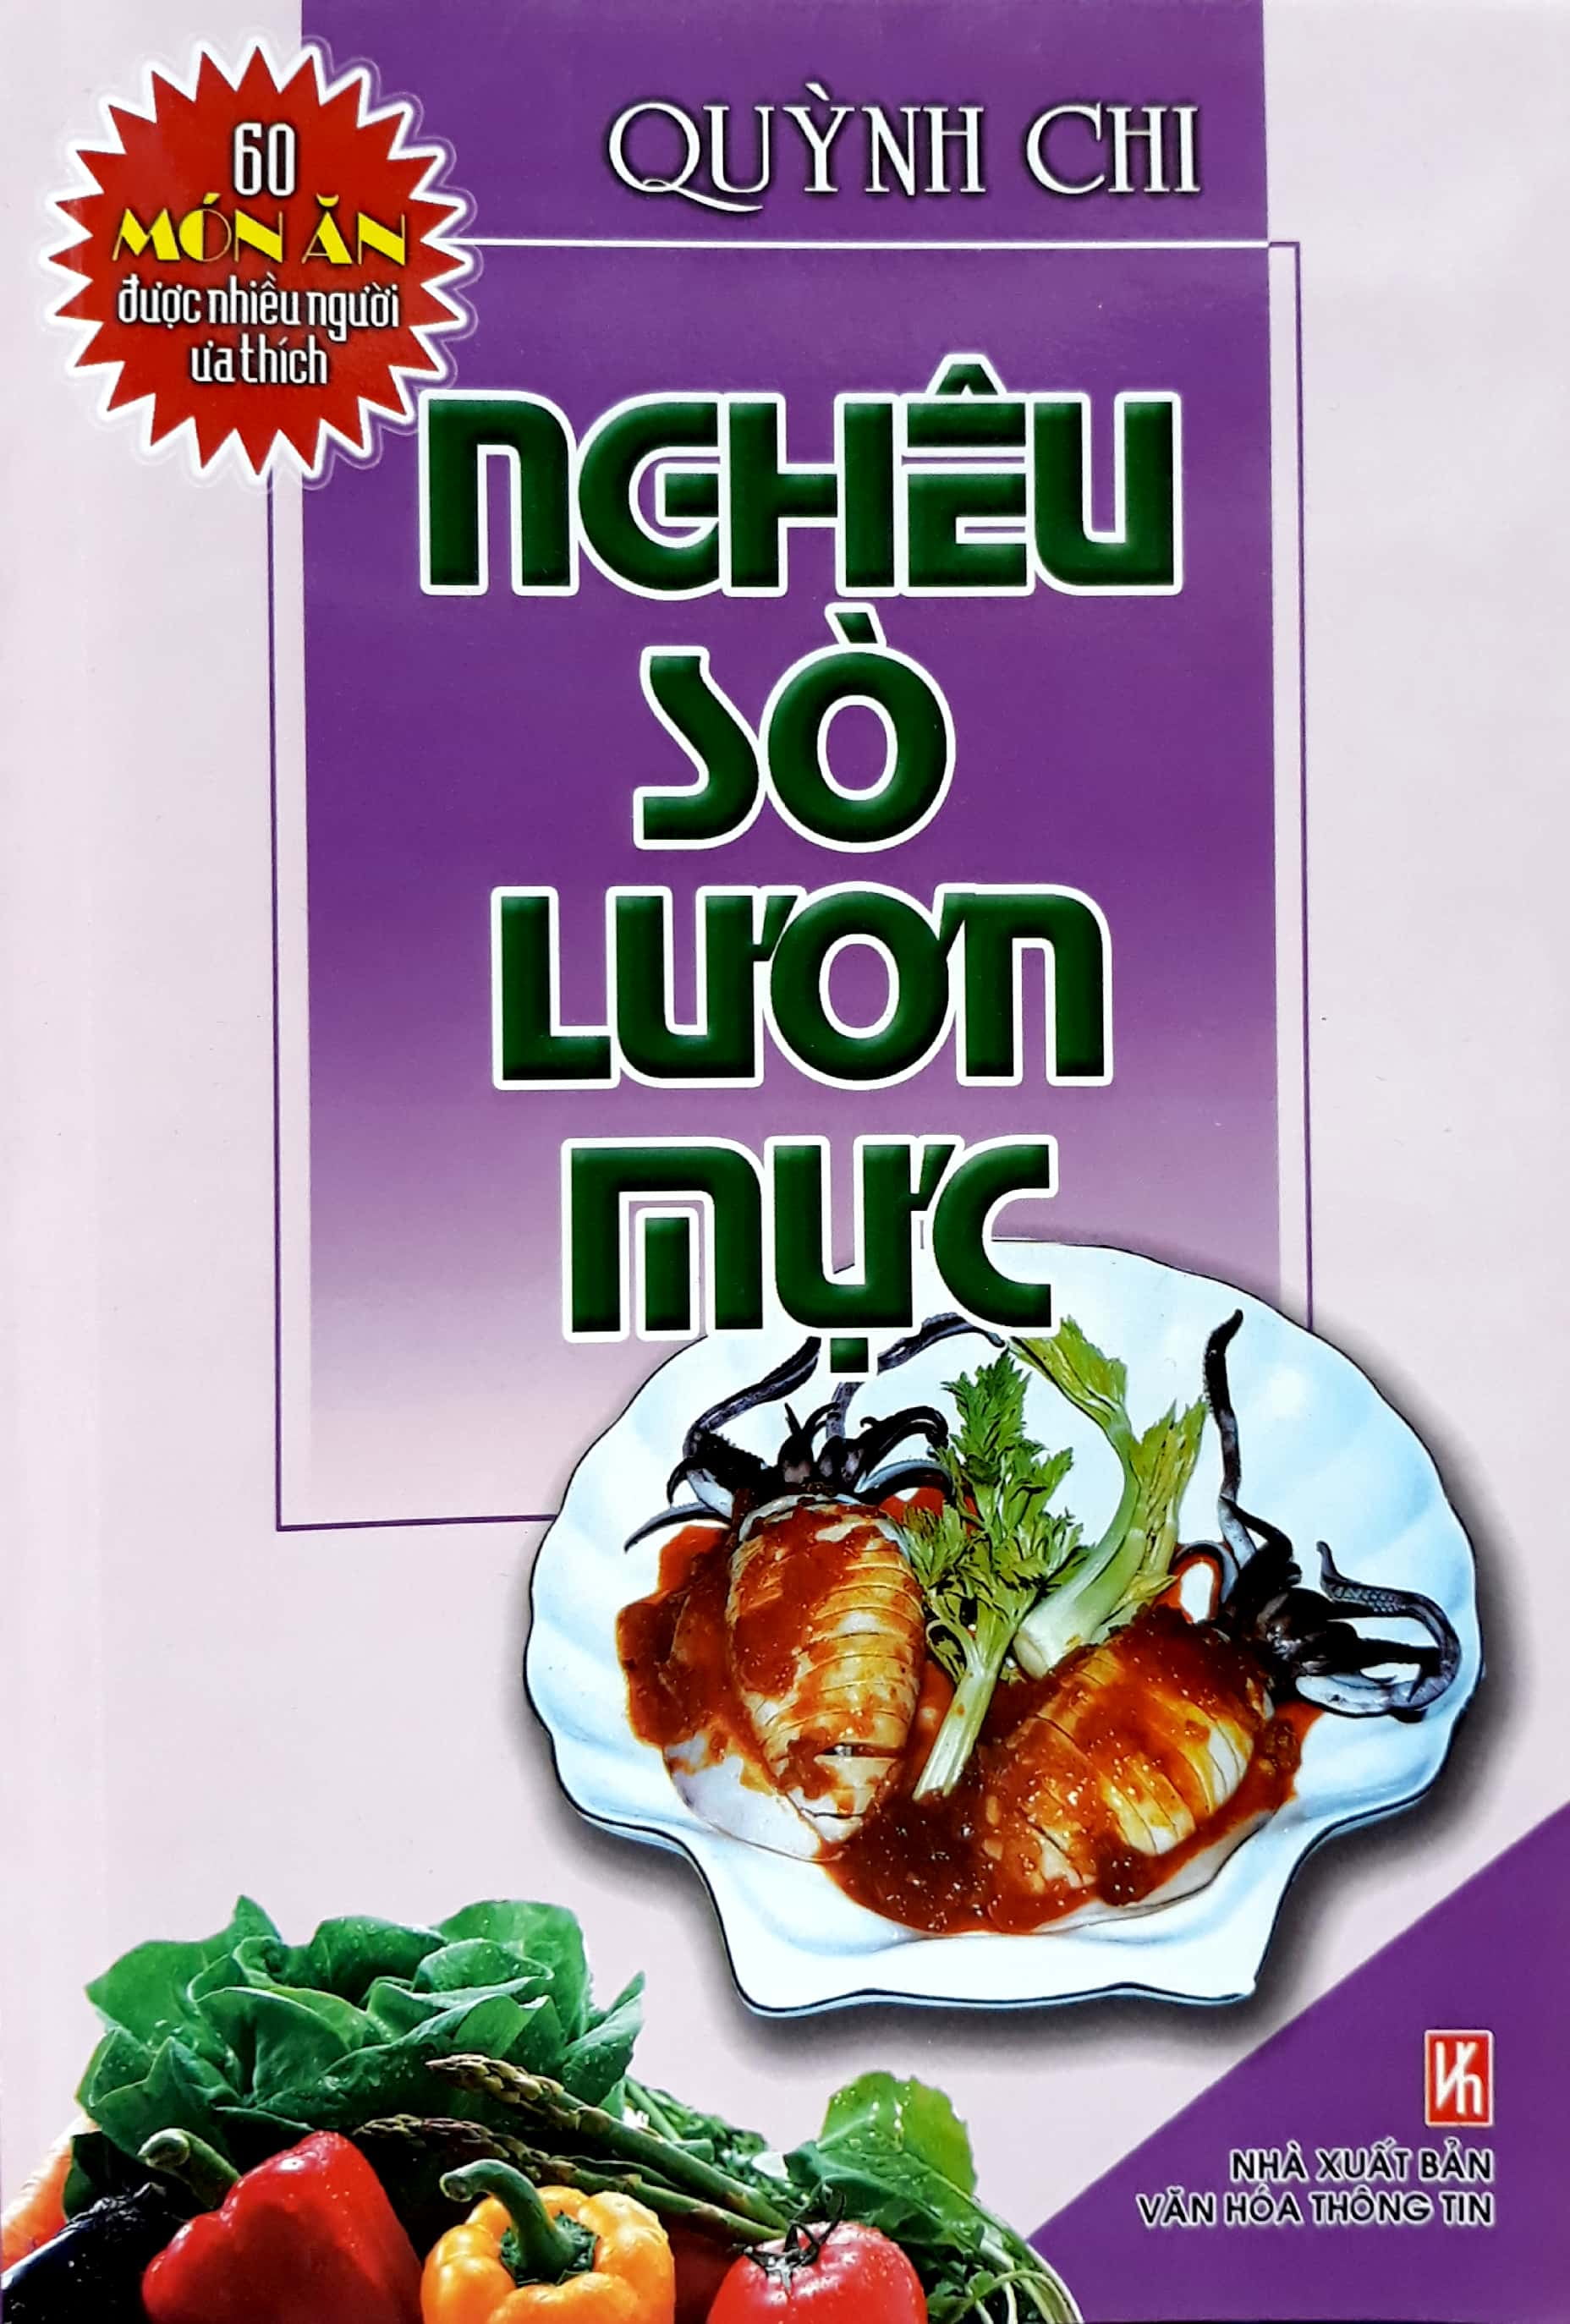 60 Món Ăn Được Ưa Thích - Nghêu, Sò, Lươn, Mực PDF